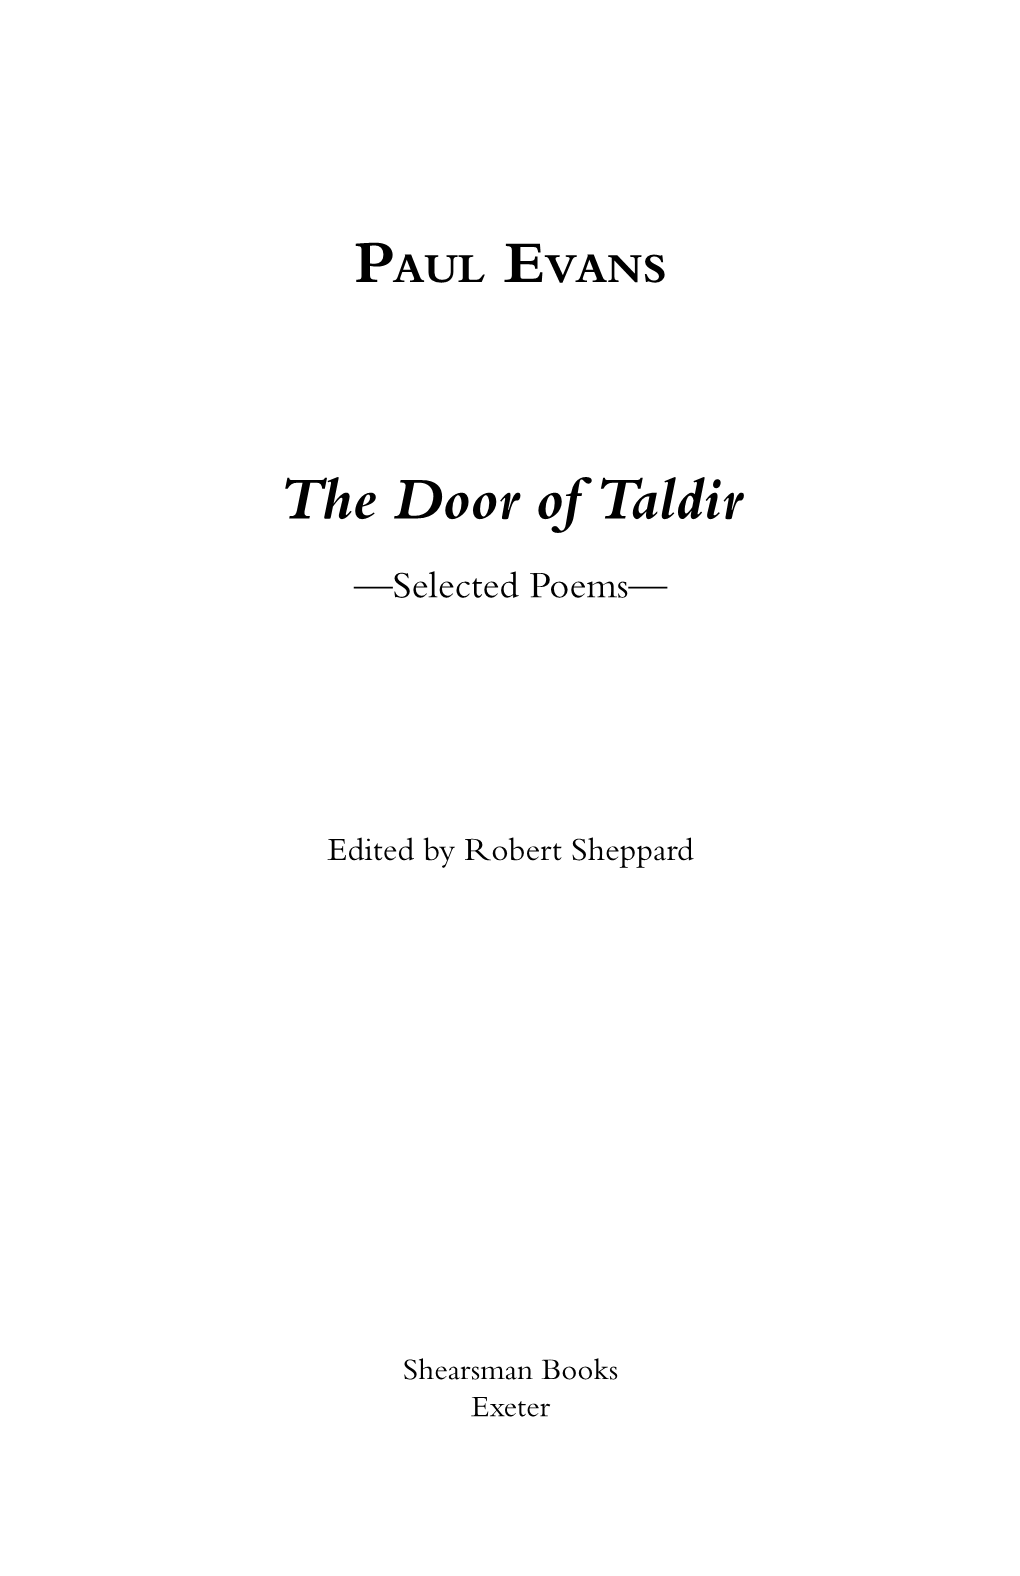 PAUL EVANS the Door of Taldir